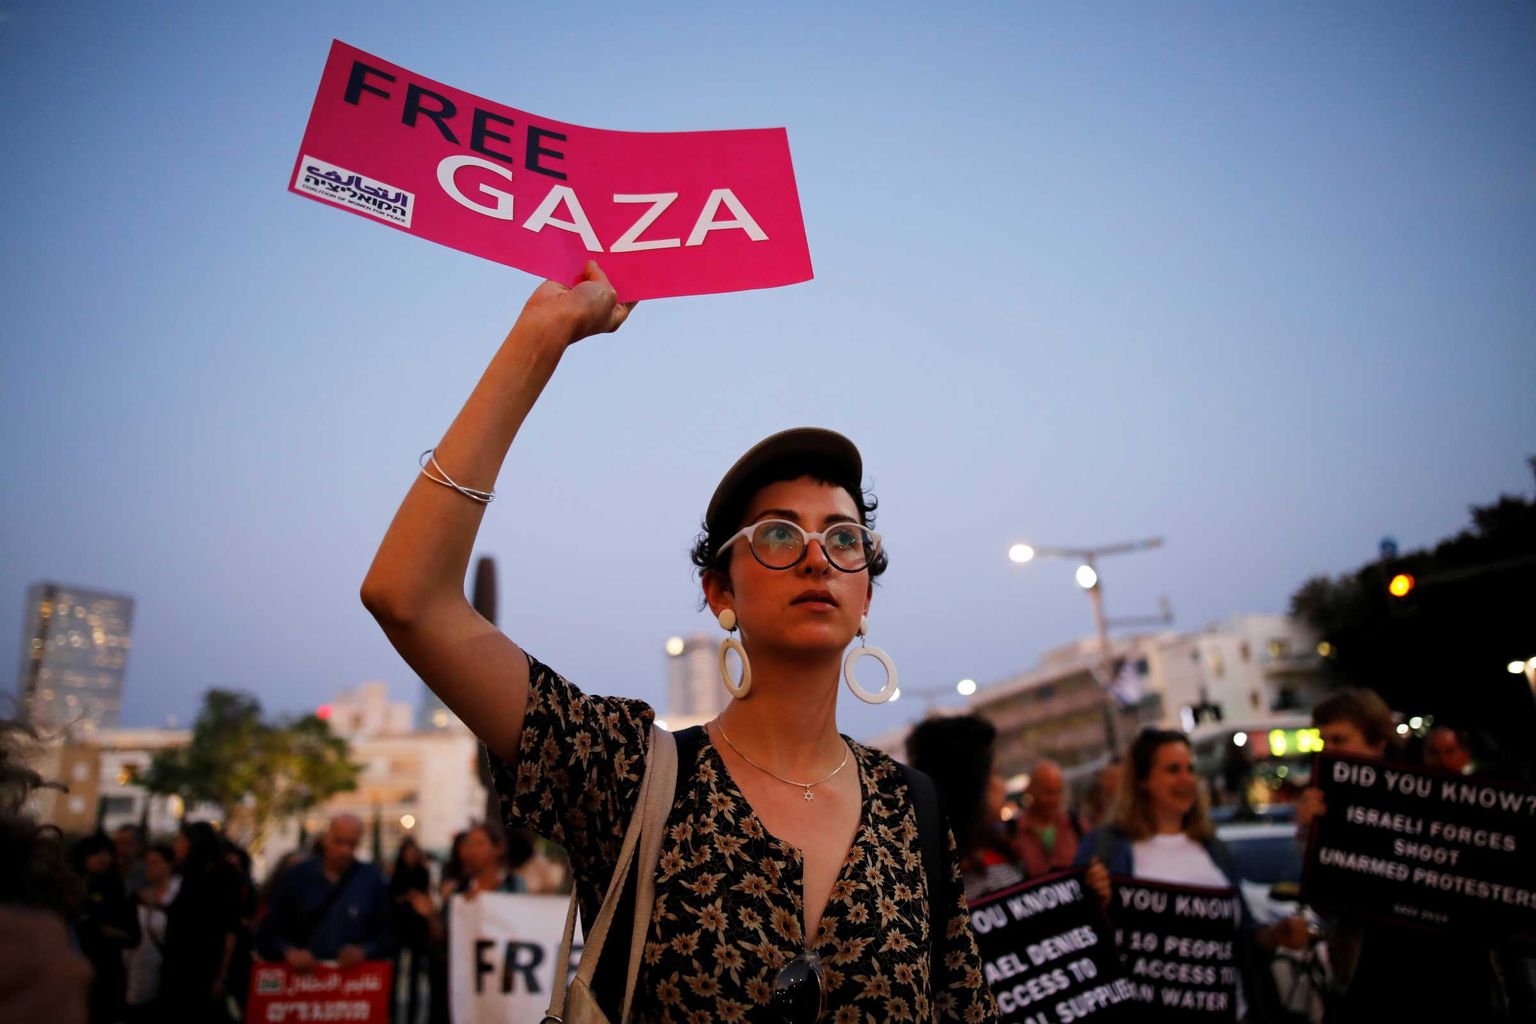 Gazas dziedātāji protestē pret Eirovīziju Izraēlā